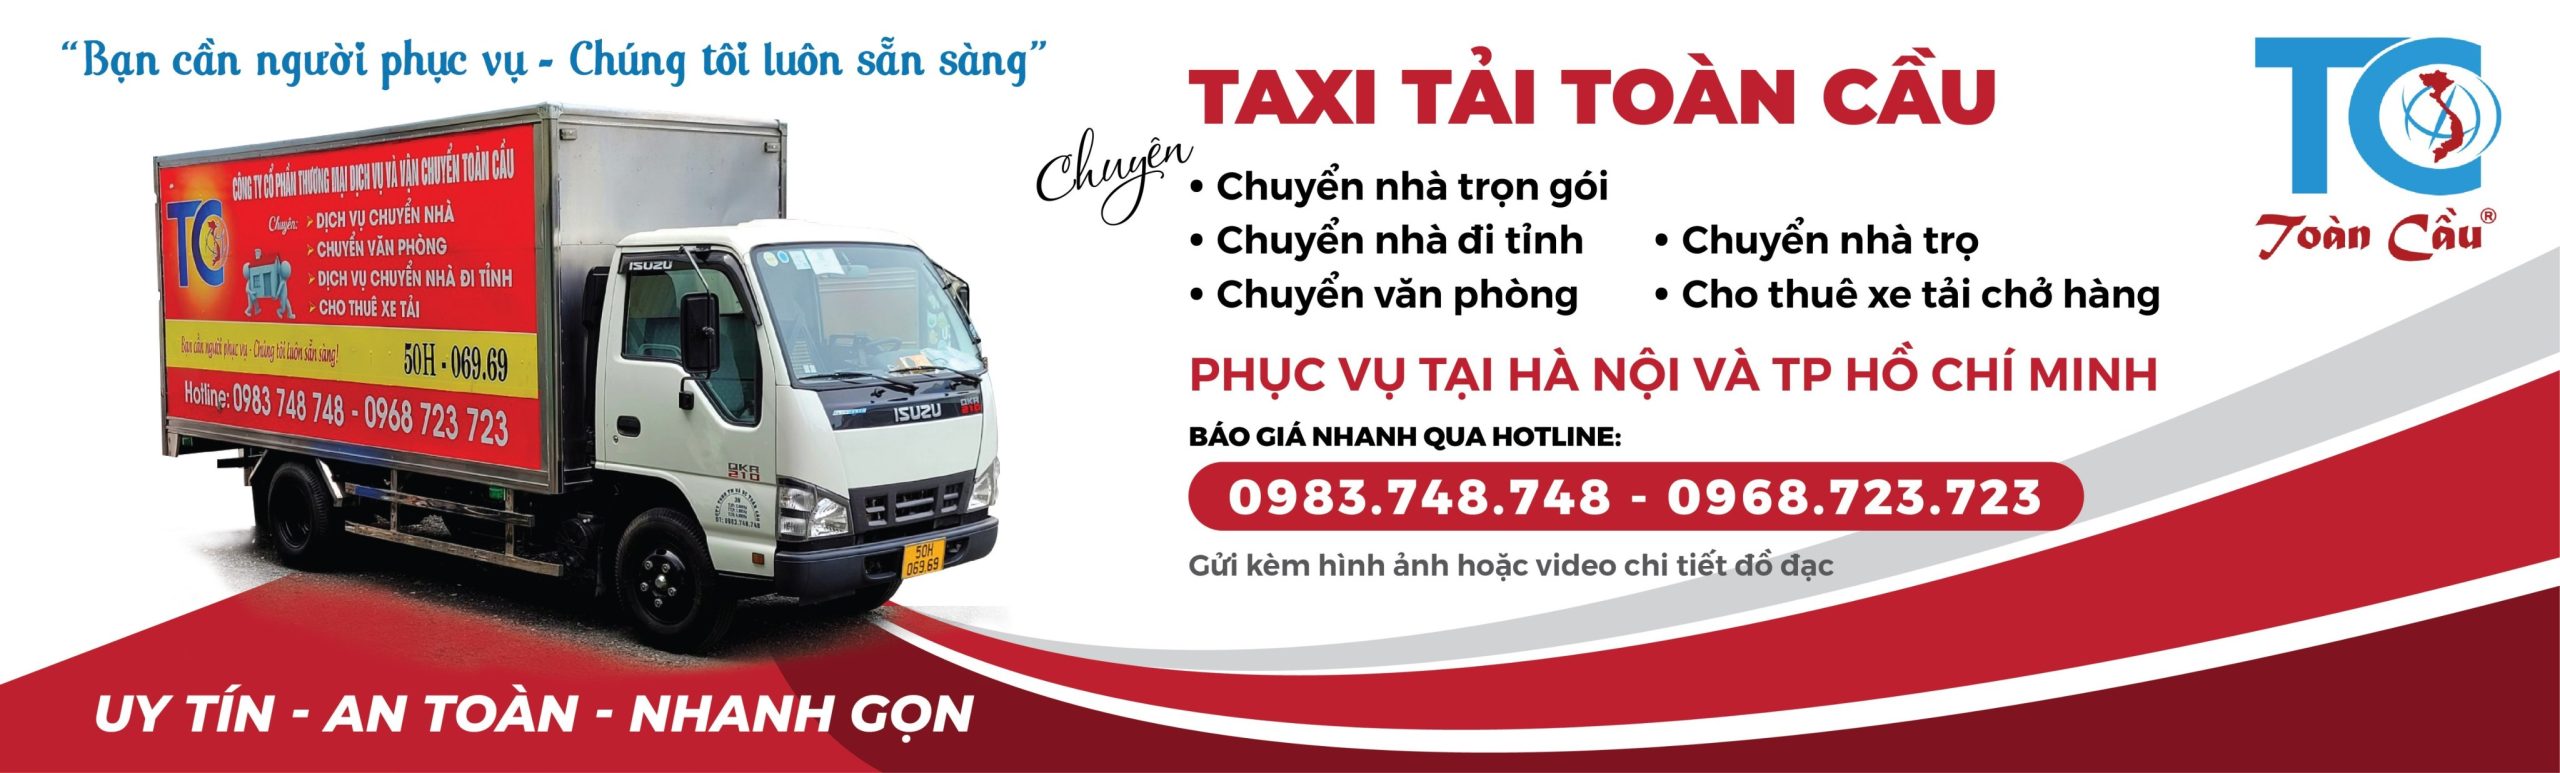 Dịch vụ taxi tải Toàn Cầu